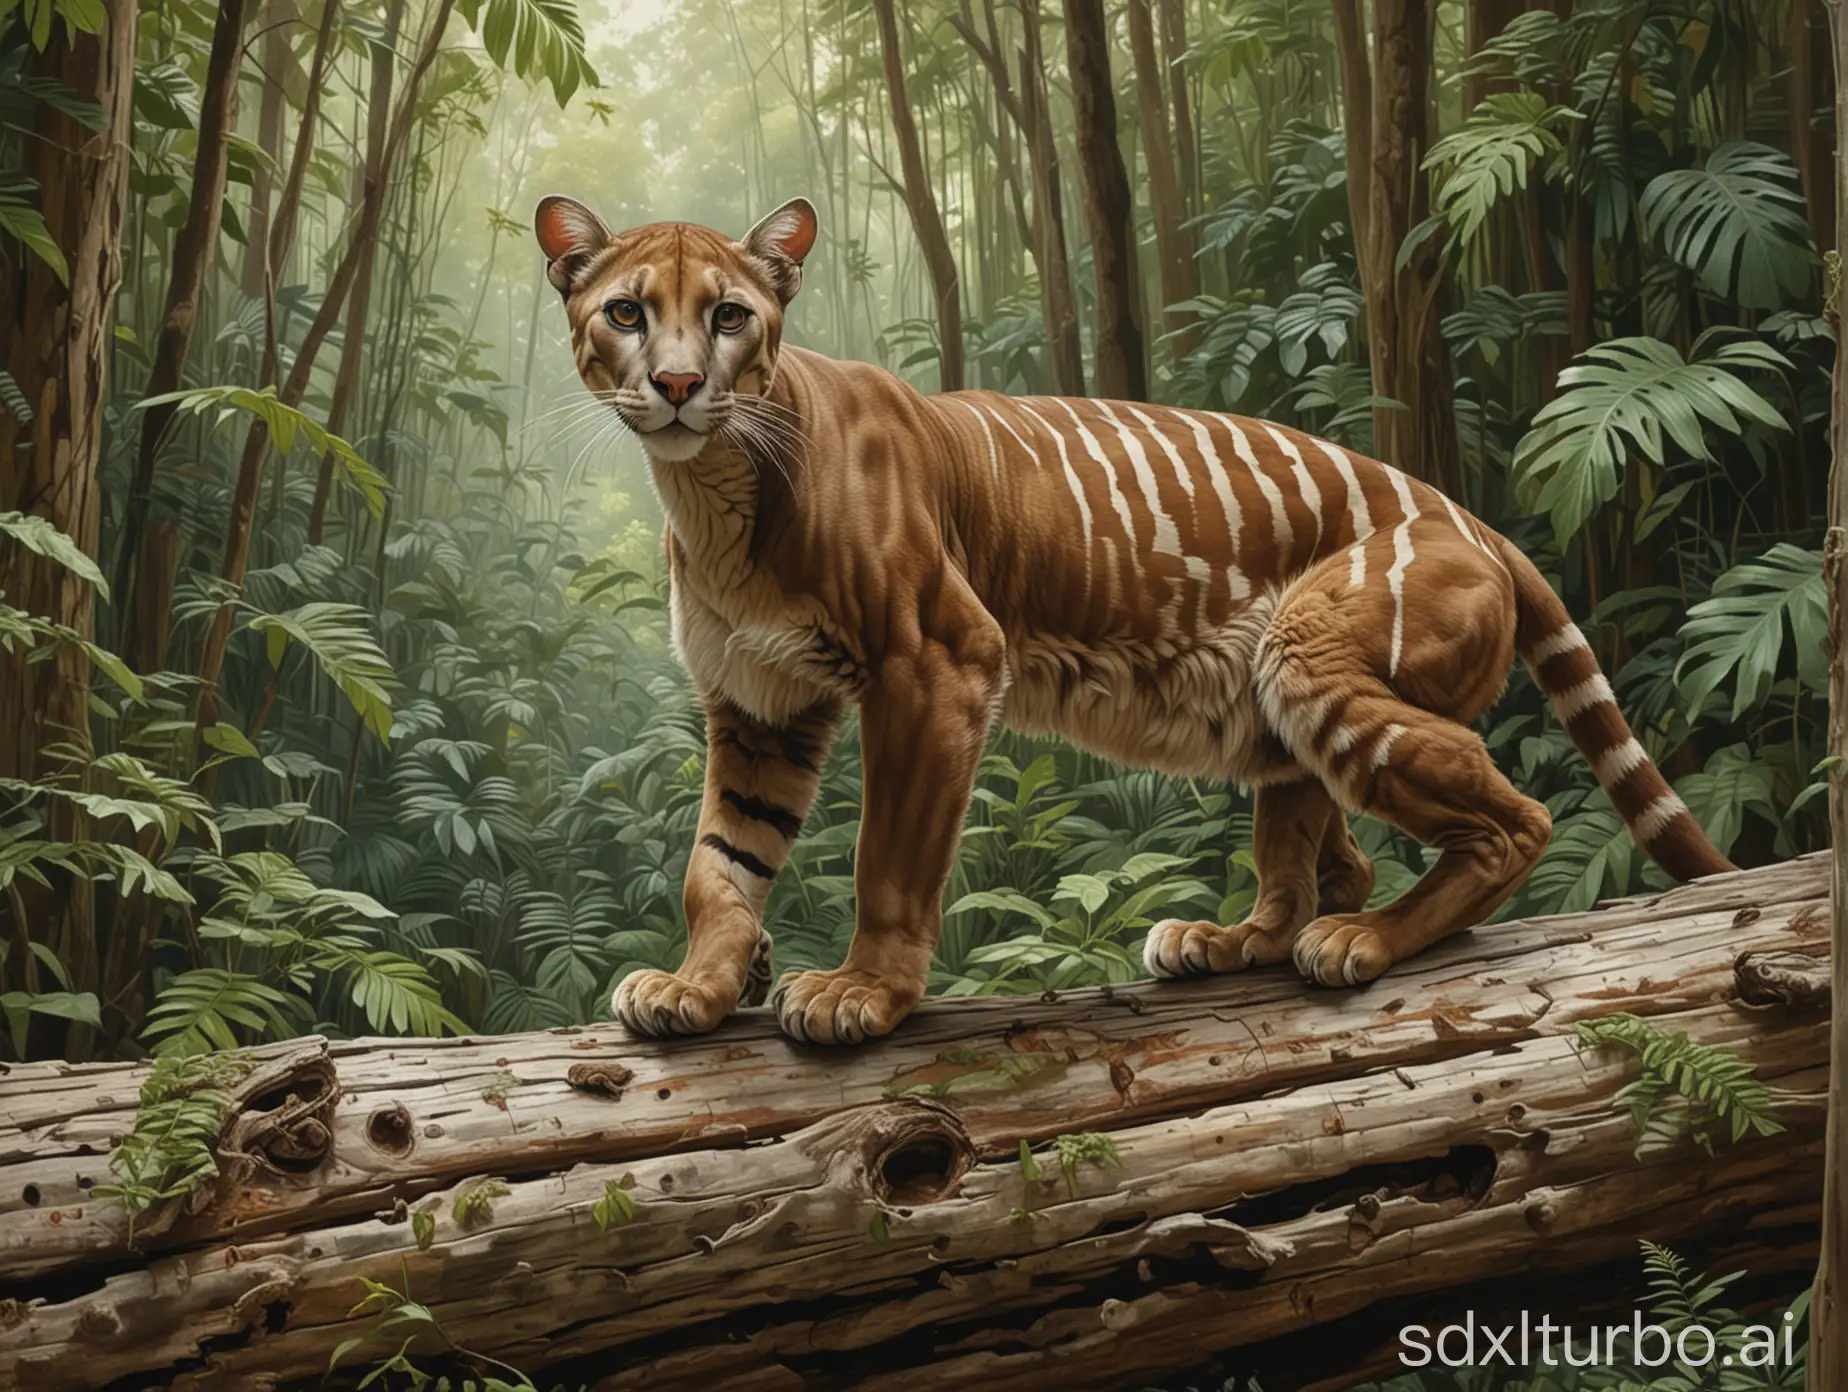 Majestic-Brown-Puma-Walking-on-Fallen-Tree-Trunk-in-Lush-Rainforest